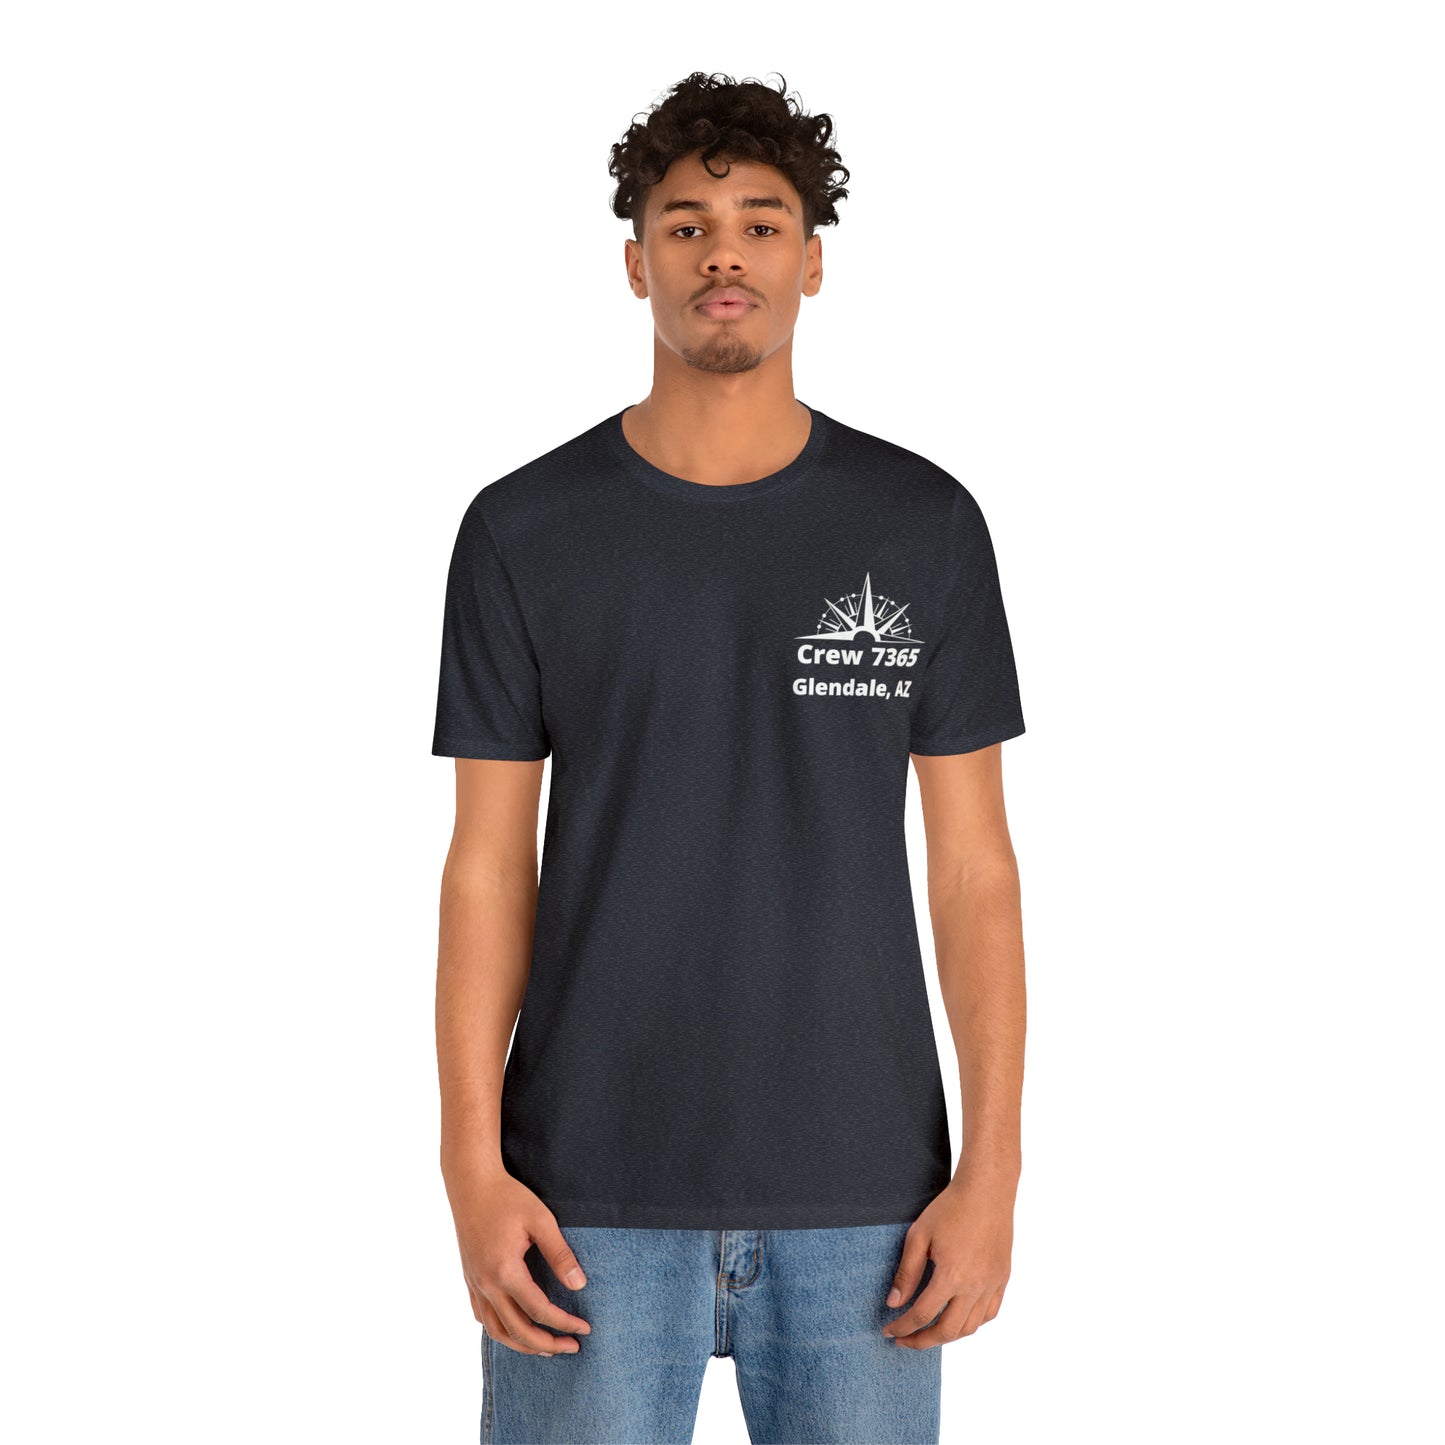 Crew 7365 - Unisex Softstyle T-Shirt